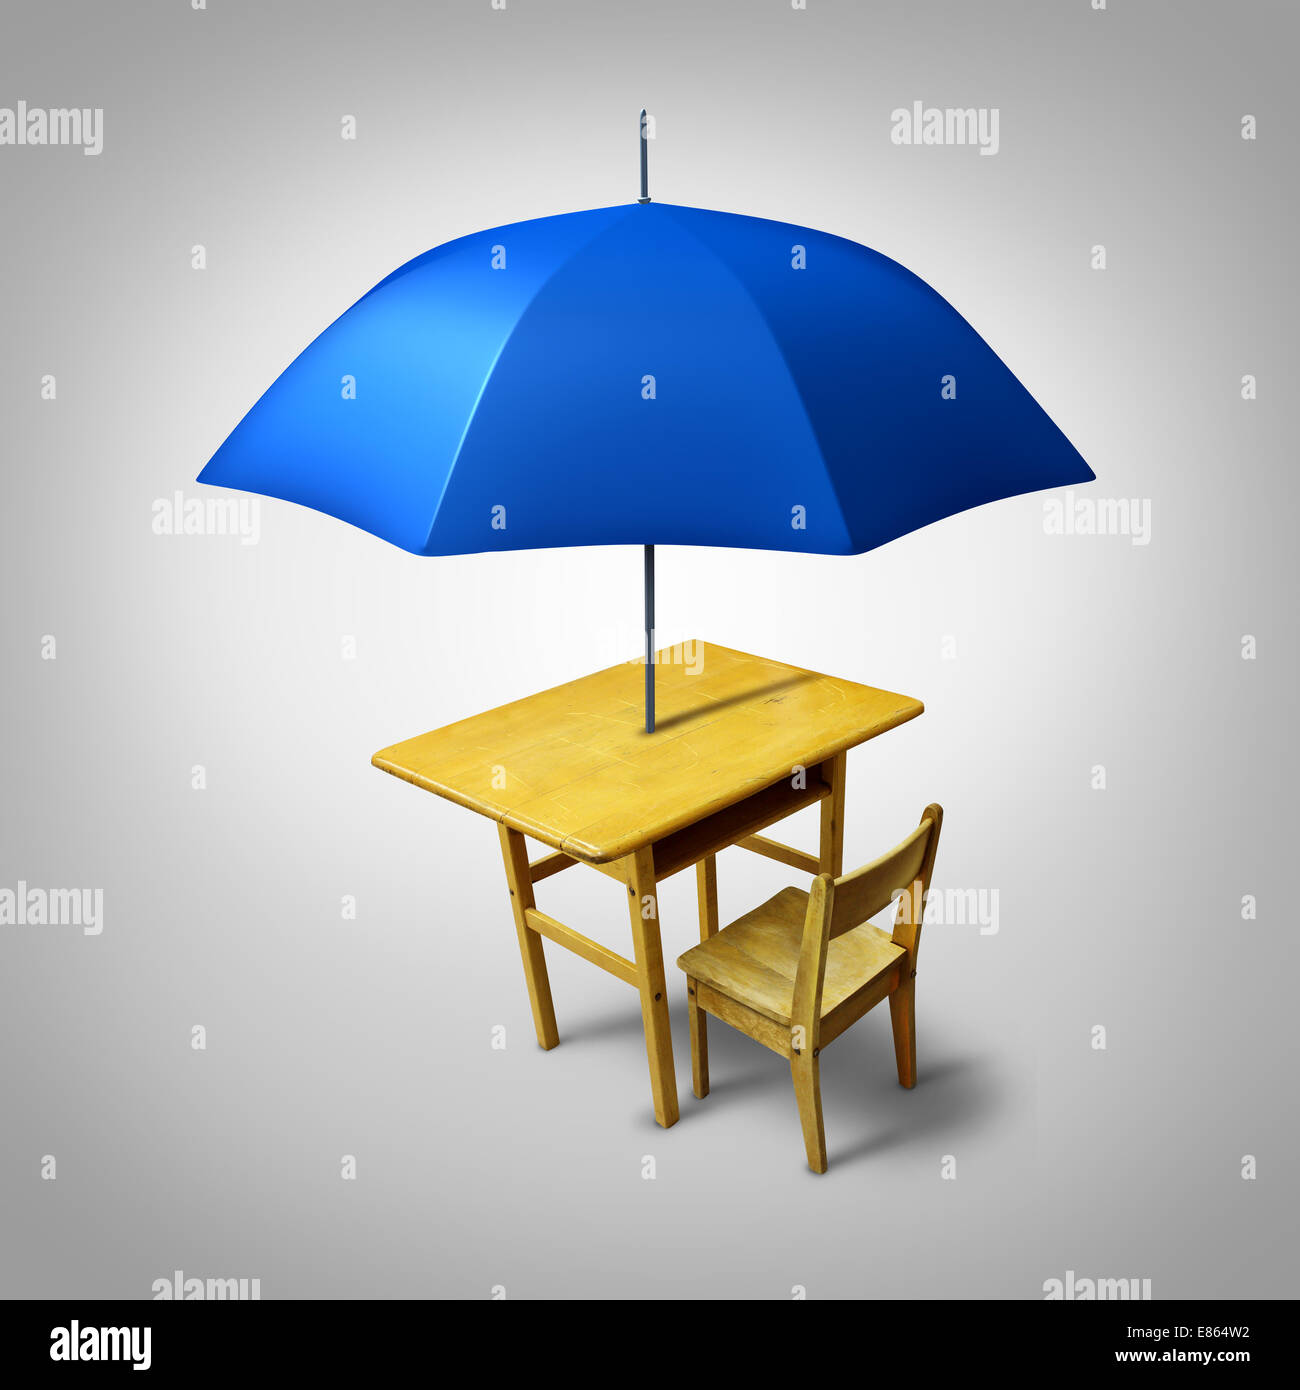 Protección de la educación y la enseñanza de la vivienda para la alfabetización y el aprendizaje como un genérico de pupitre escolar con un paraguas como símbolo de proteger y brindar seguridad a los estudiantes. Foto de stock